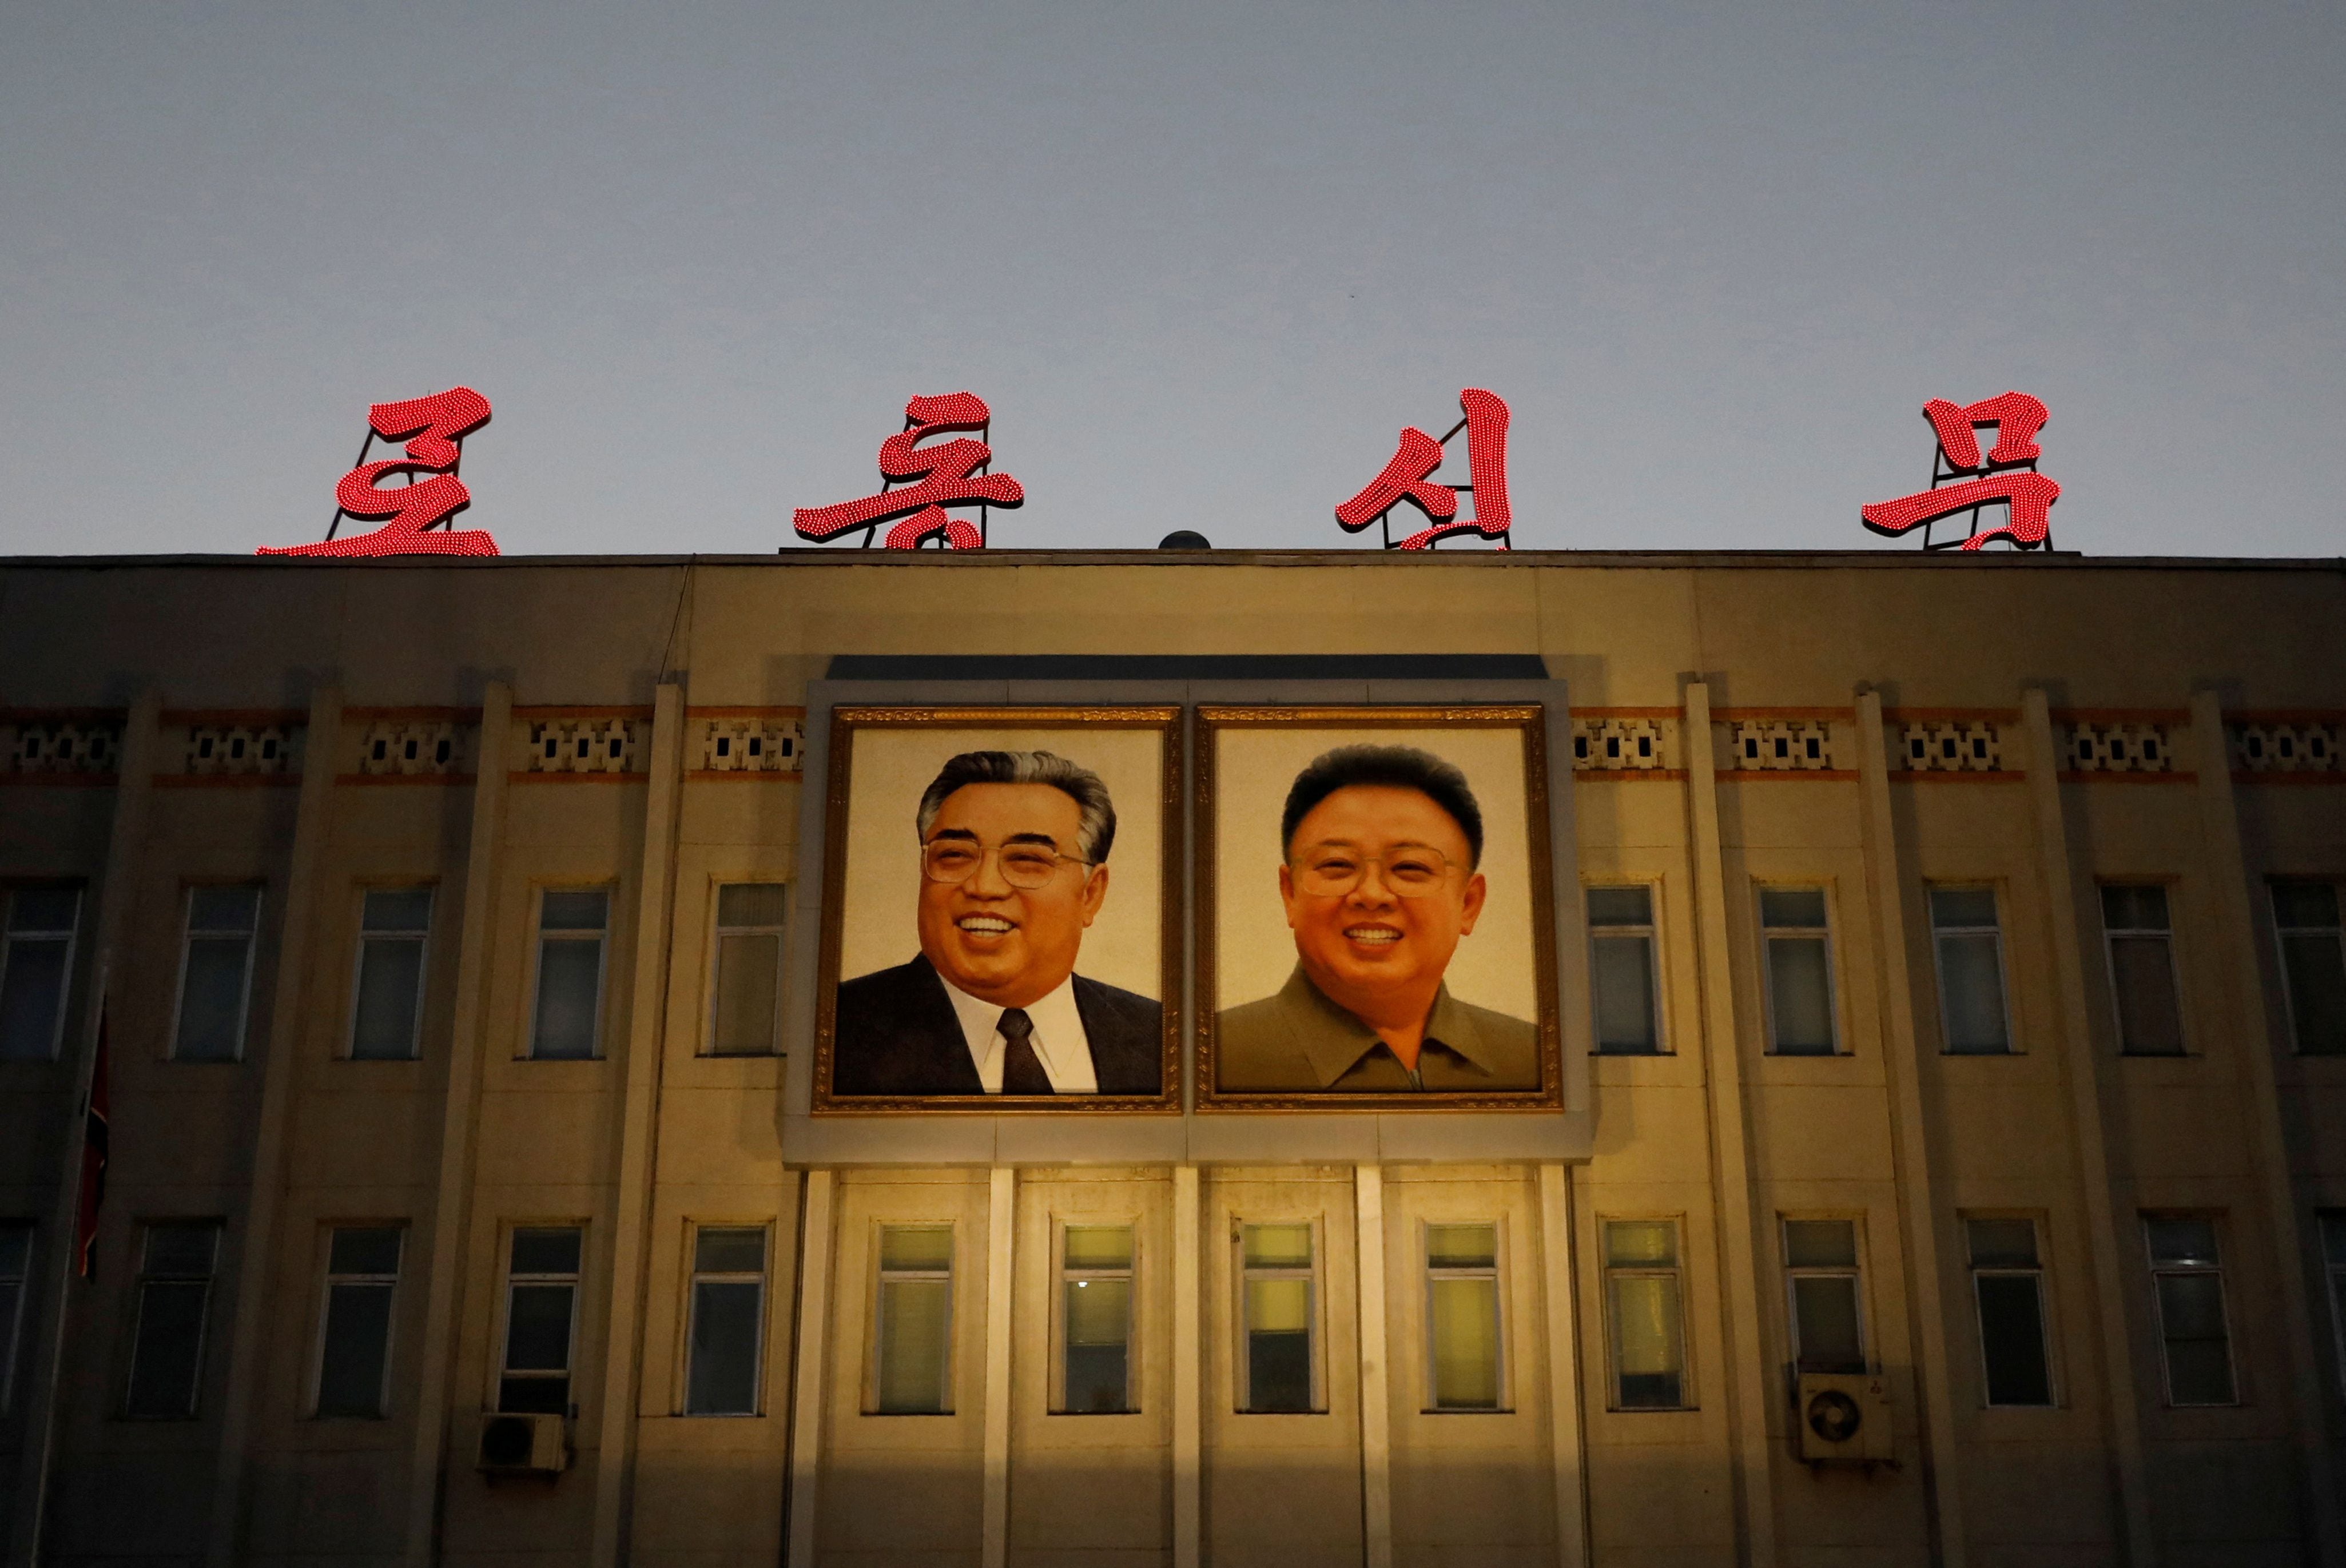 Retratos de los fallecidos líderes norcoreanos Kim Il Sung y Kim Jong Il se ven en la fachada de un edificio gubernamental en Pyongyang, Corea del Norte, el 10 de septiembre de 2018. REUTERS/Danish Siddiqui/Foto de archivo